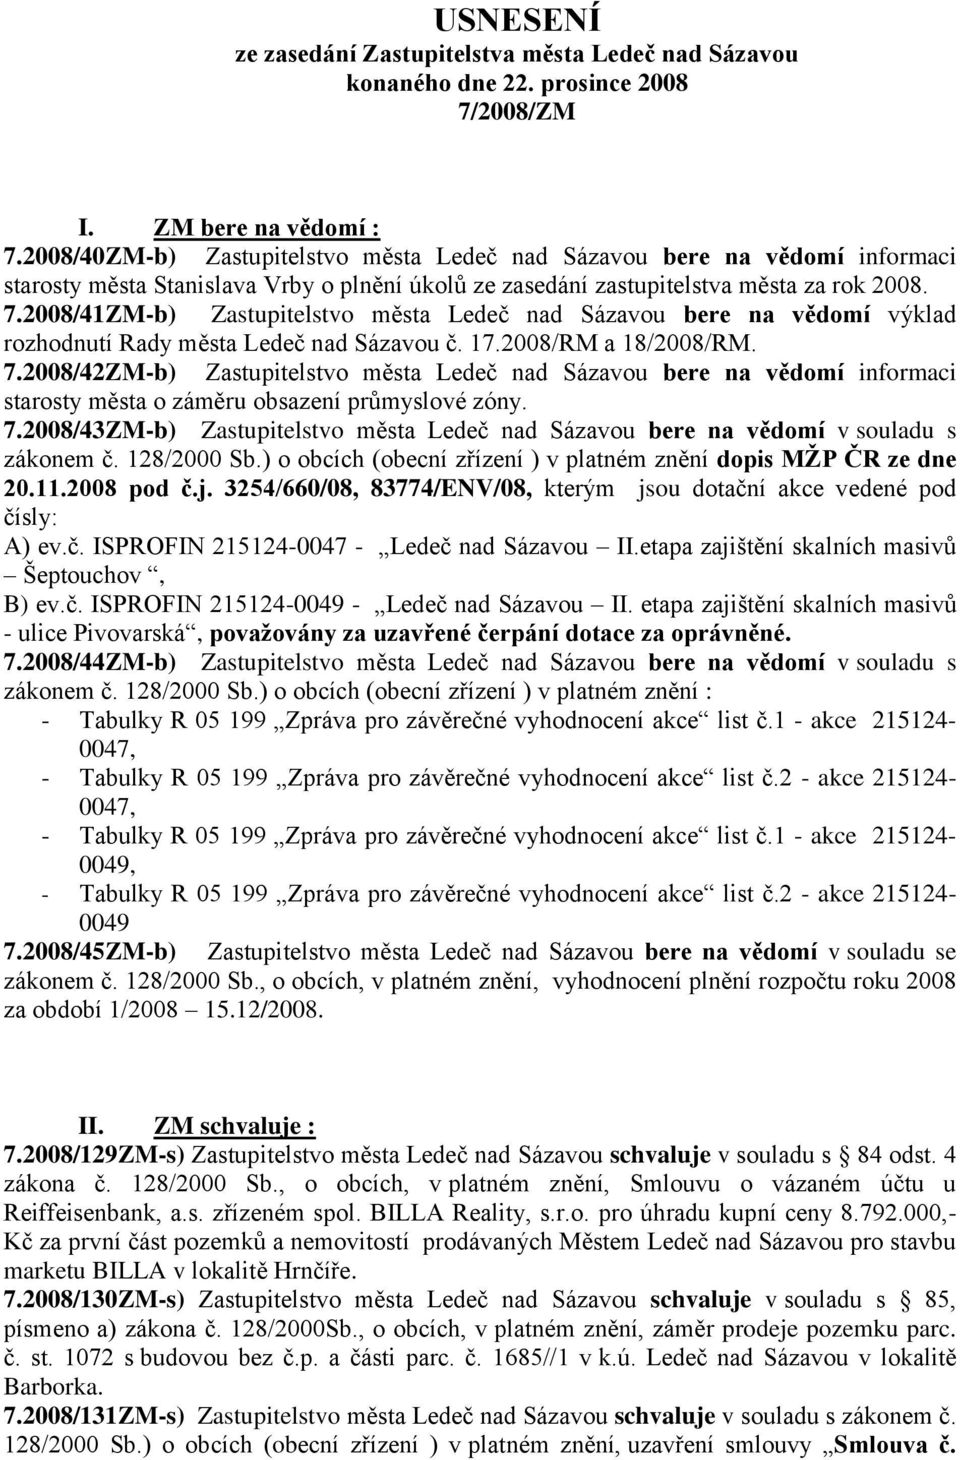 2008/41ZM-b) Zastupitelstvo města Ledeč nad Sázavou bere na vědomí výklad rozhodnutí Rady města Ledeč nad Sázavou č. 17.2008/RM a 18/2008/RM. 7.